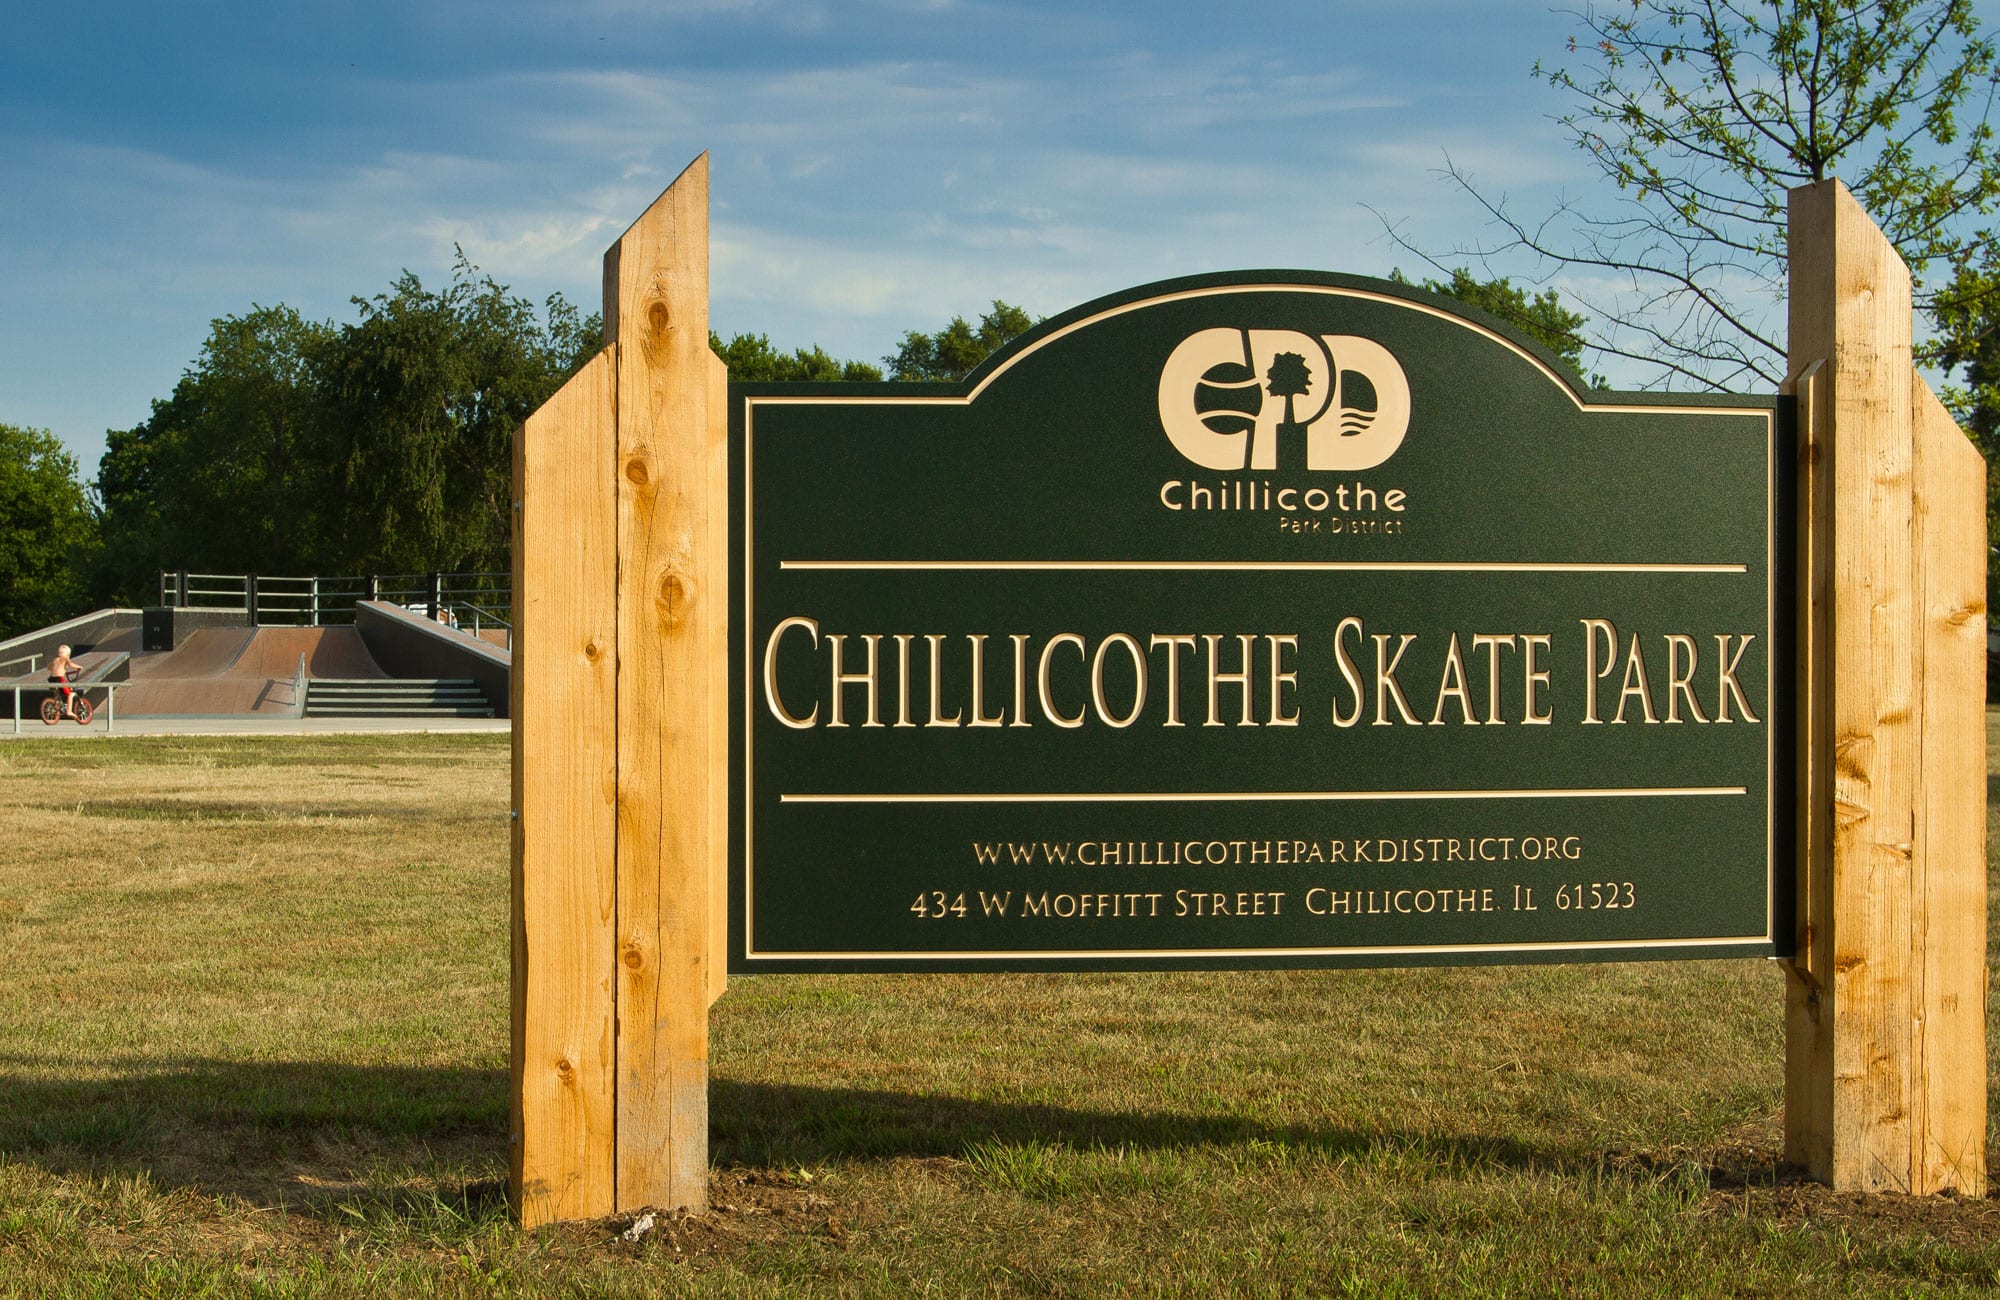 Chillicothe Skate Park sign